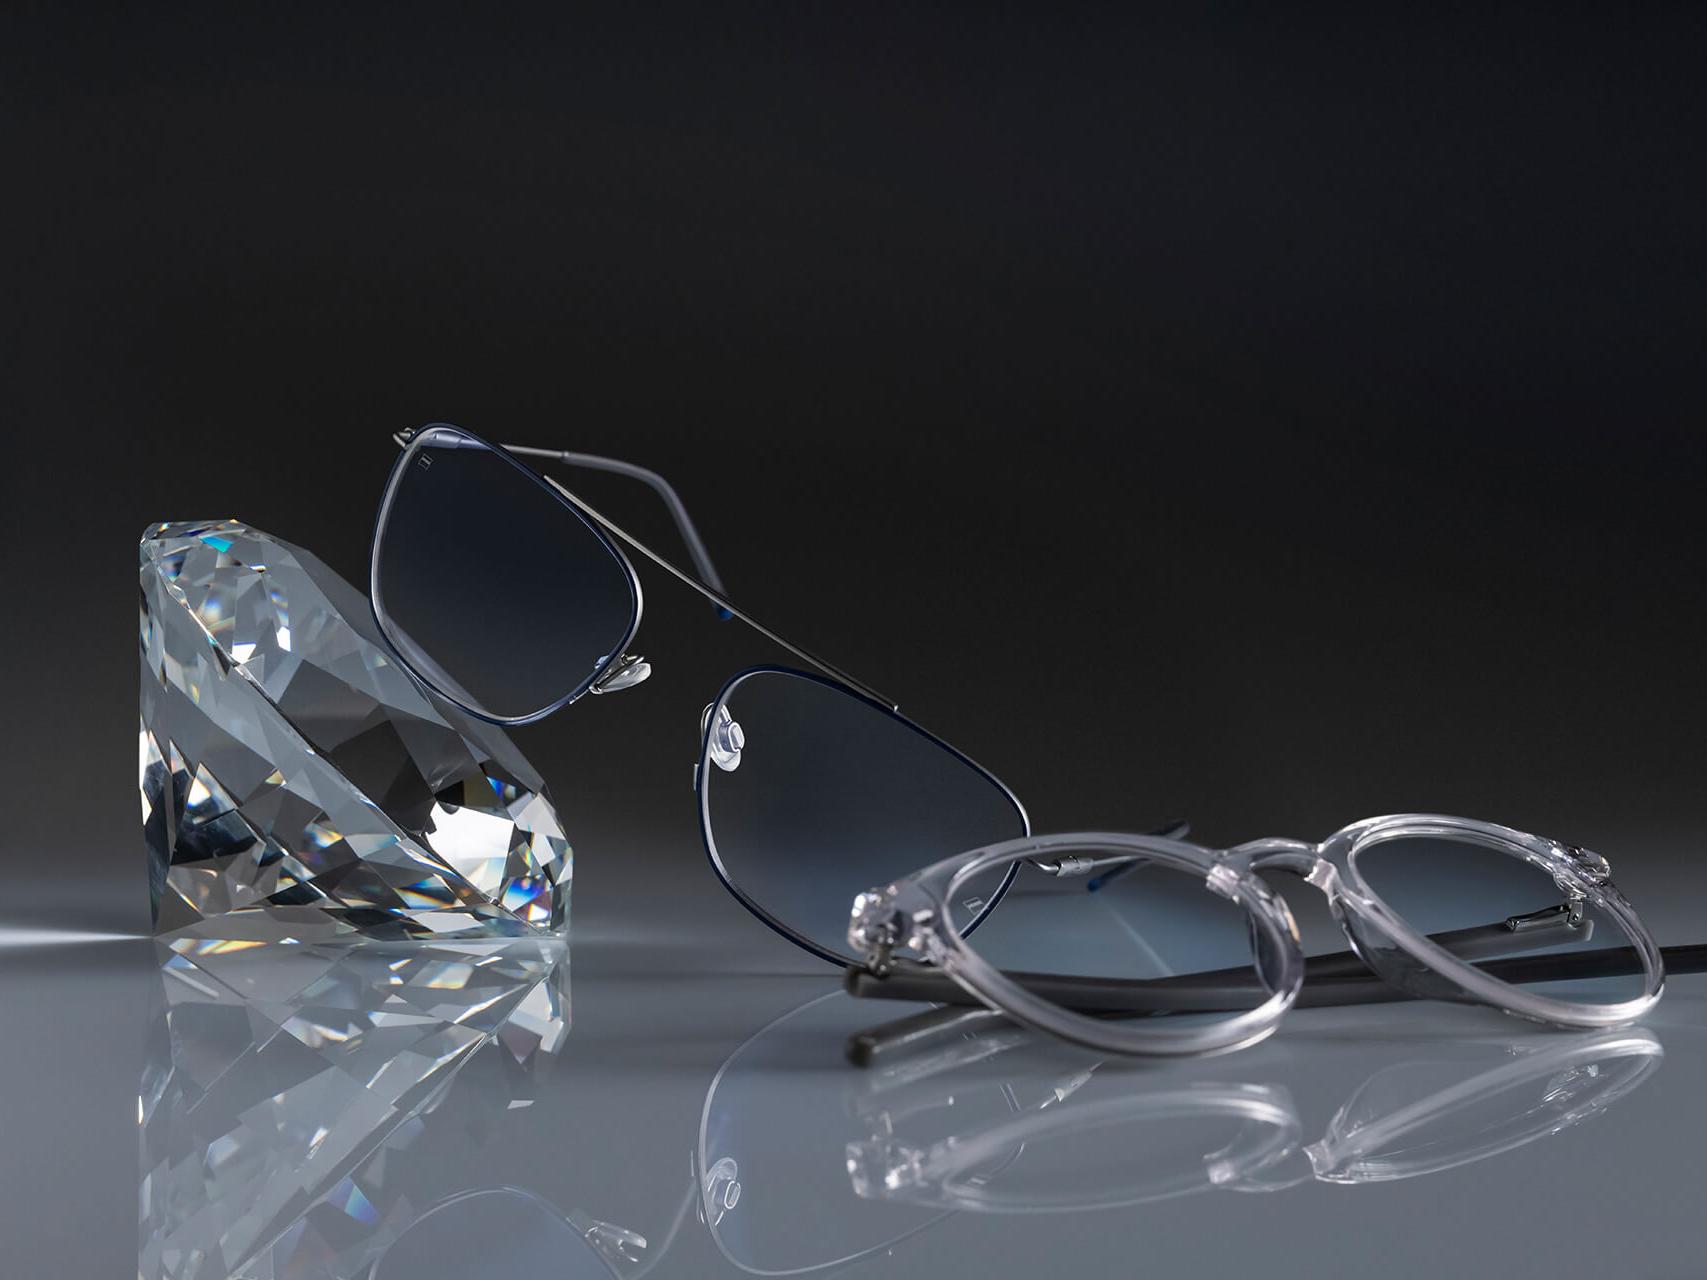 两副采用了蔡司最坚硬的钻立方铂金膜的蔡司眼镜镜片。一副眼镜靠在一块水晶旁，而另一副则平放在地面上。两副透明镜片都没有蓝色反光。